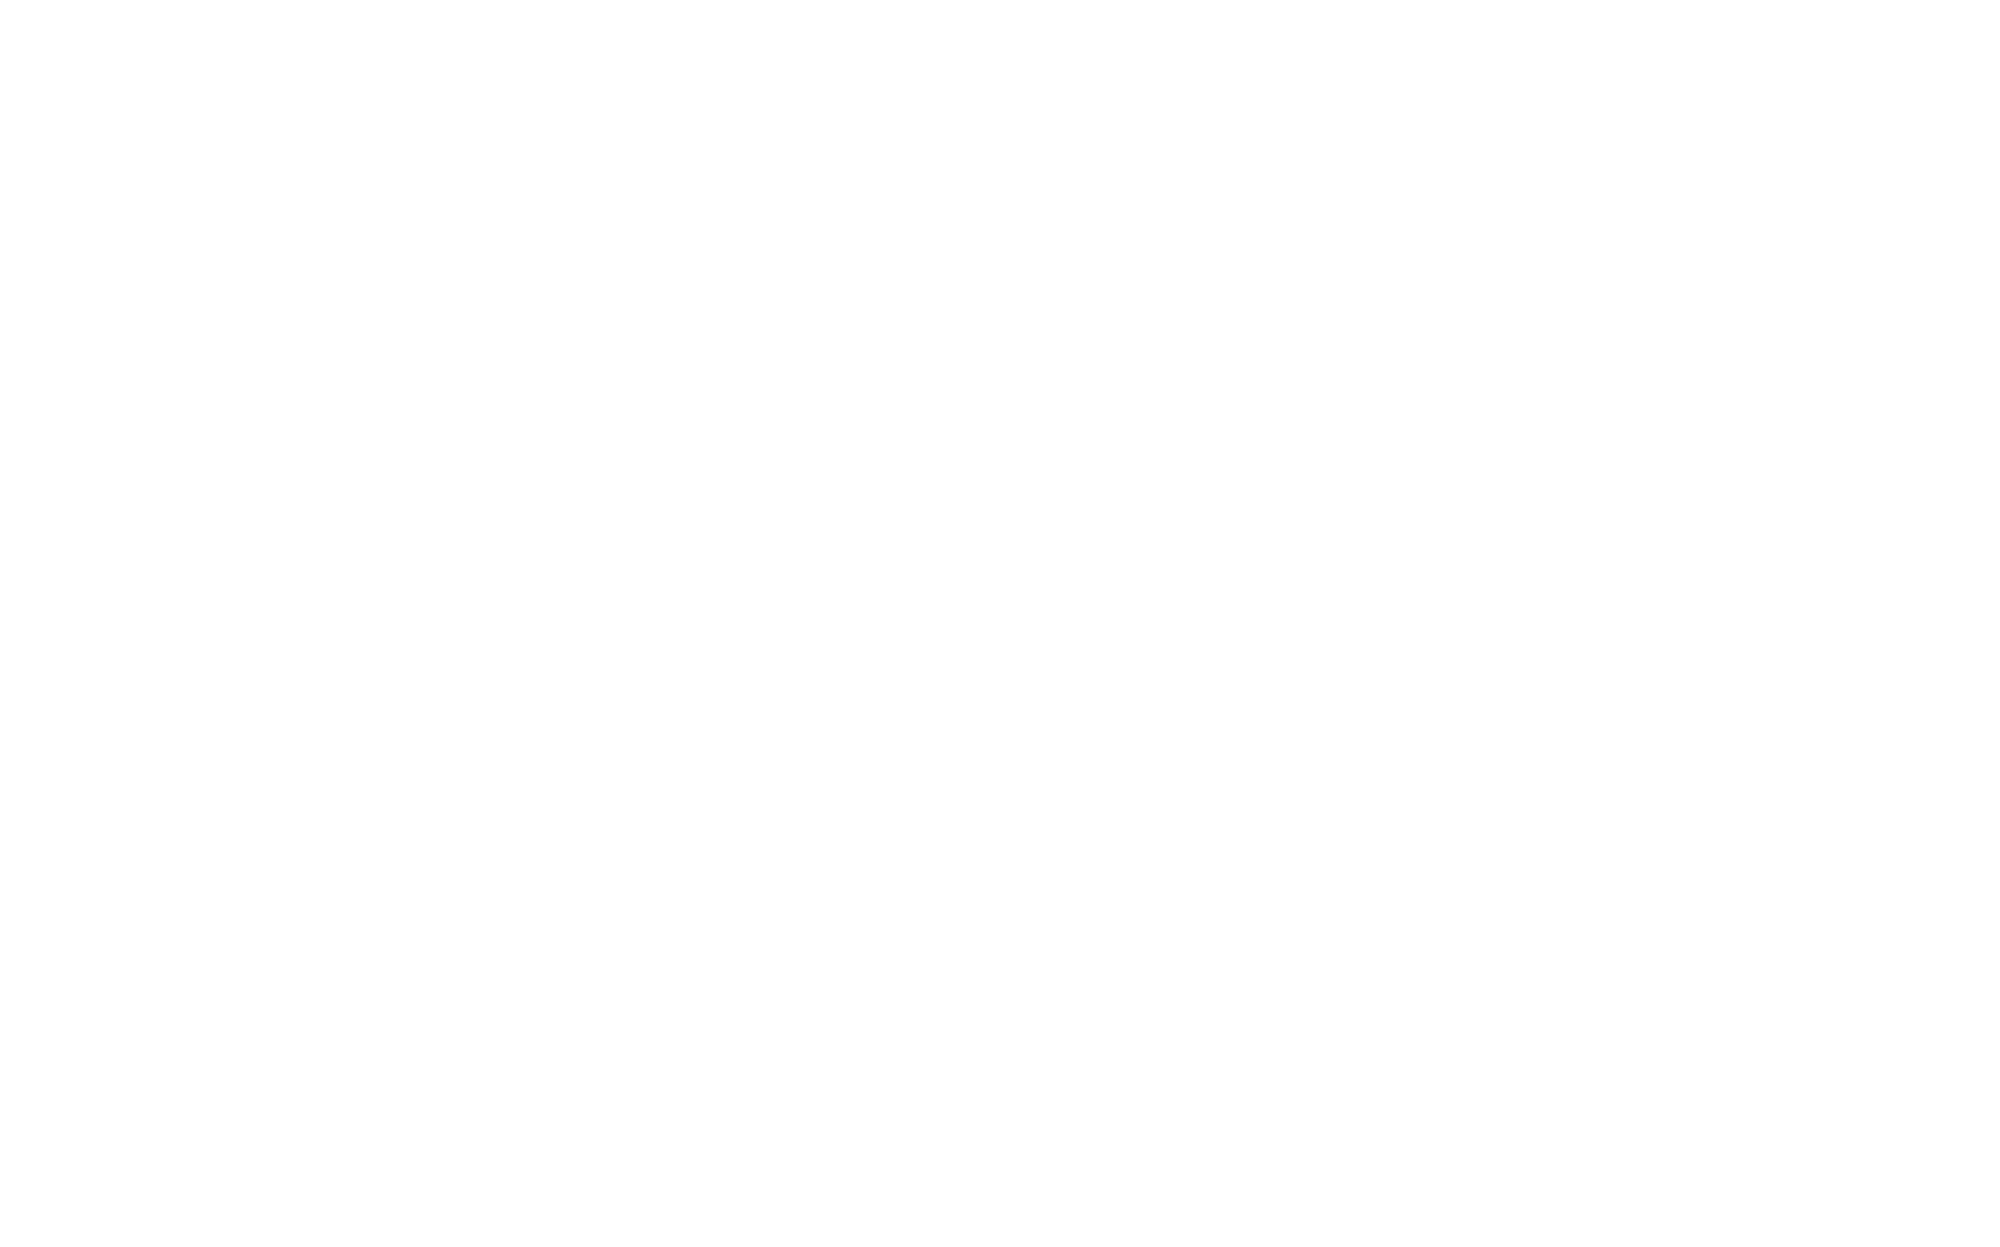 Detroit Musicians Fund